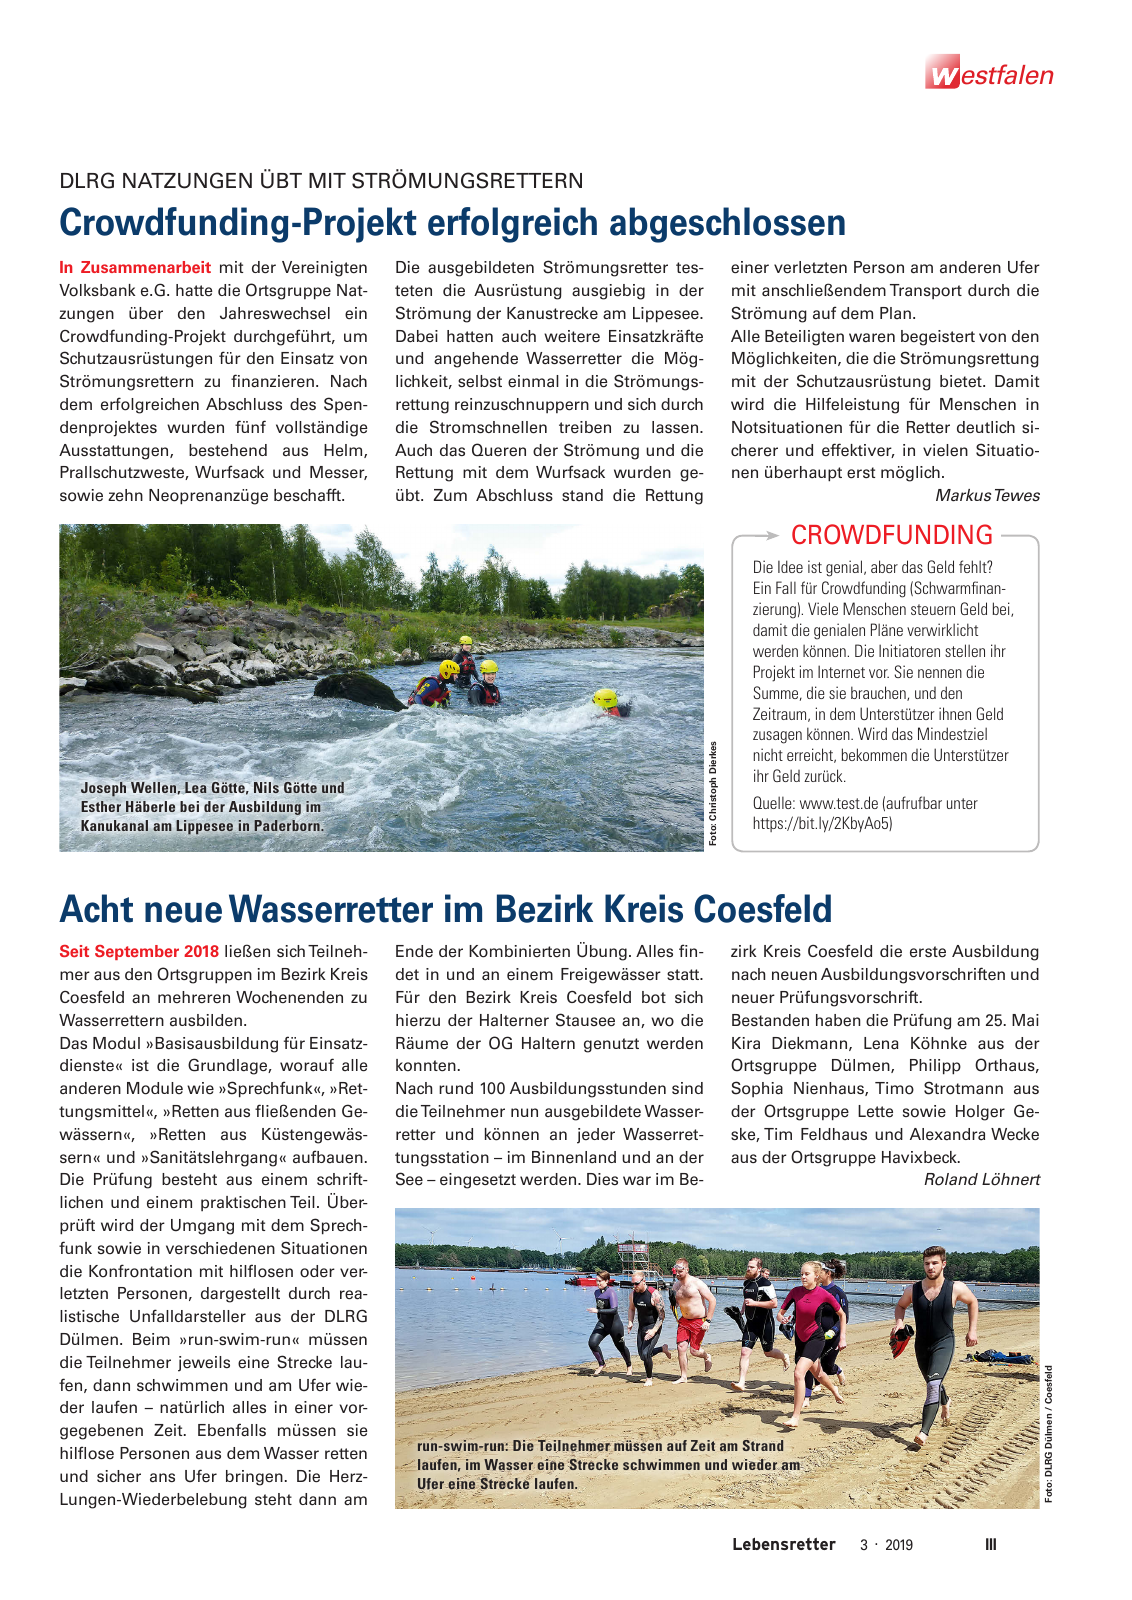 Vorschau Lebensretter 3/2019 - Westfalen Regionalausgabe Seite 5